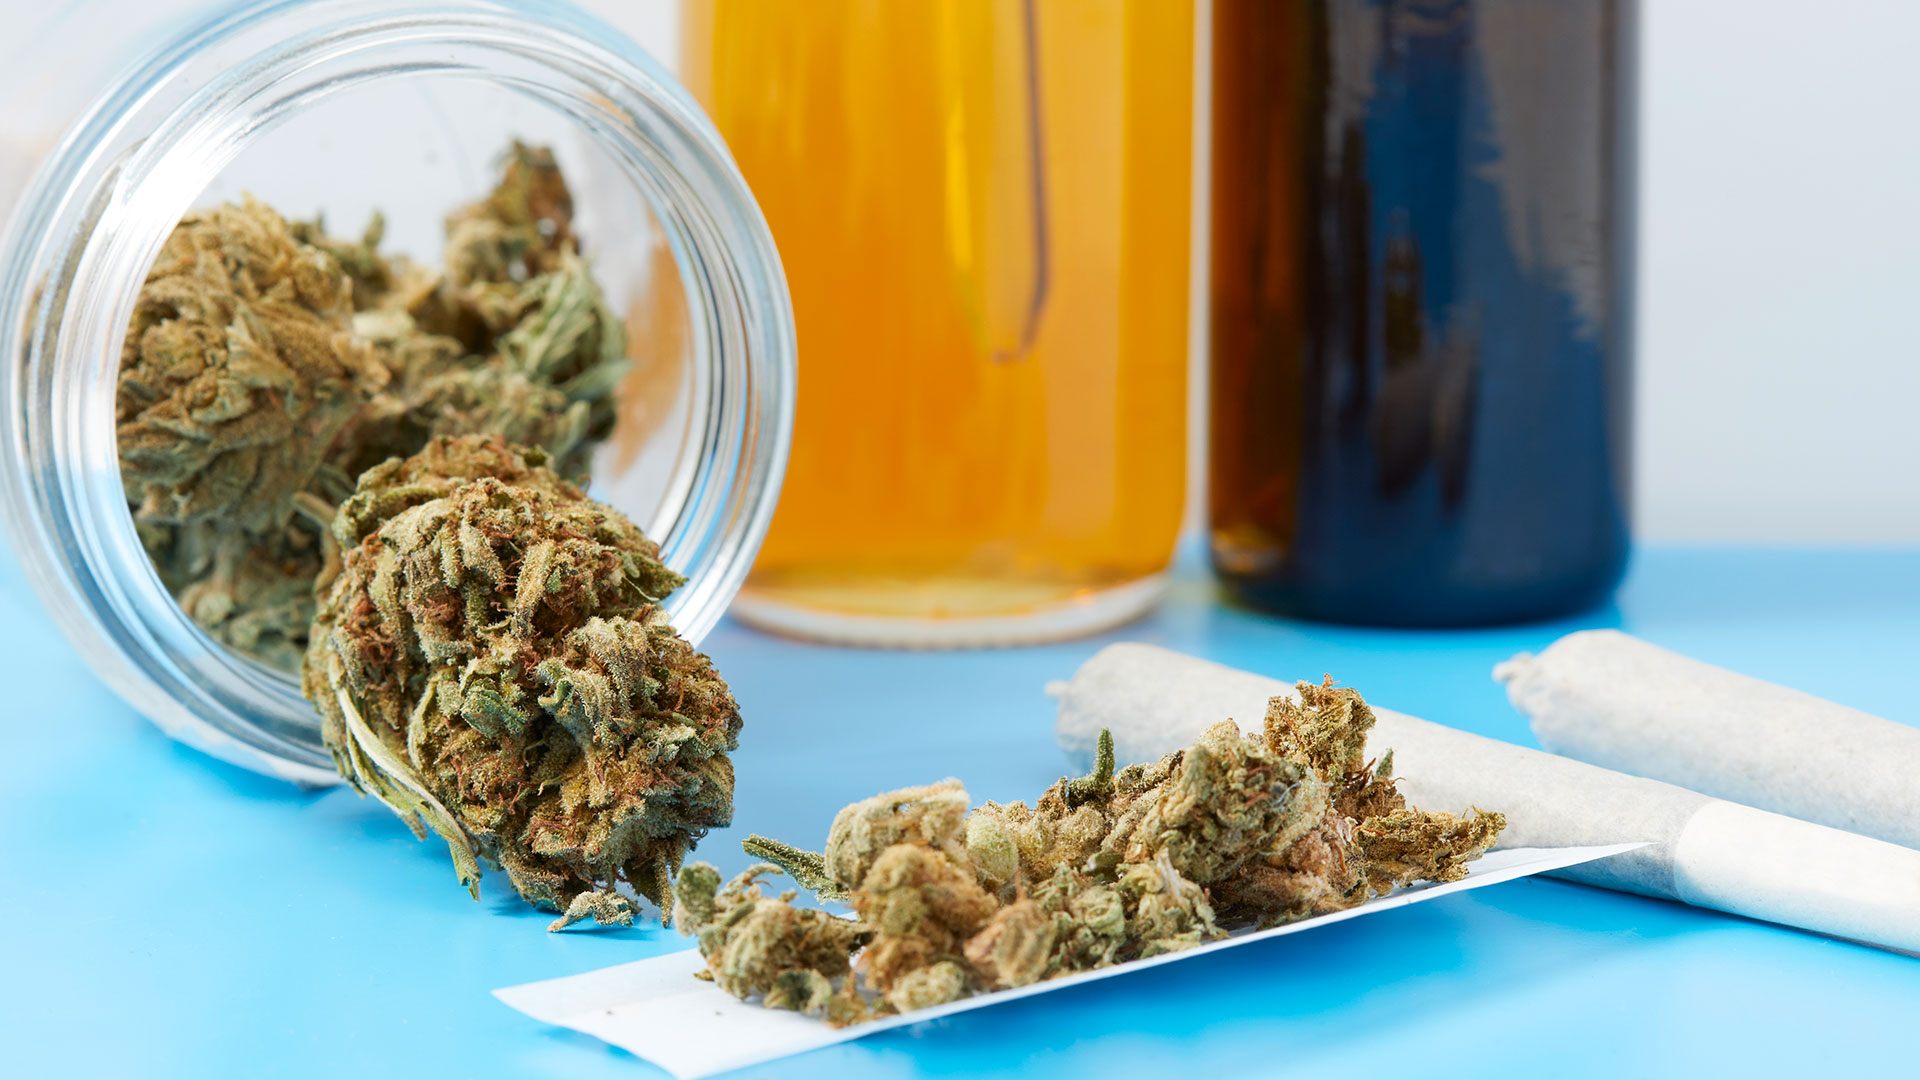 “La marihuana claramente tiene usos medicinales importantes, pero los usuarios recreativos deben pensar cuidadosamente sobre el uso excesivo”, dijo uno de los autores principales del estudio (Getty)